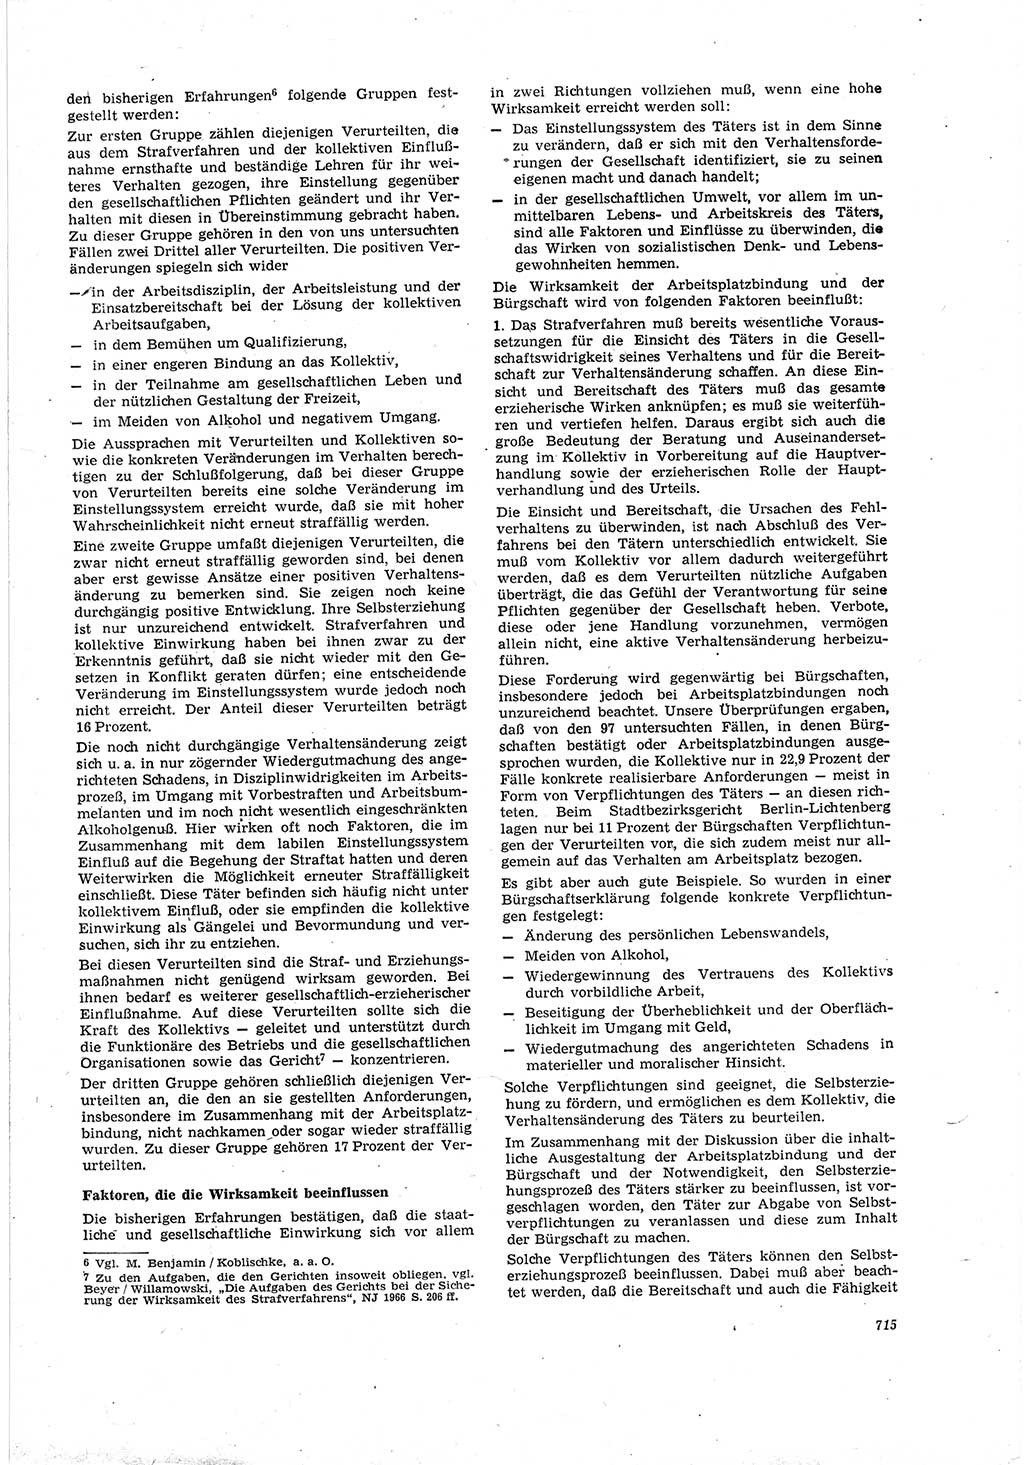 Neue Justiz (NJ), Zeitschrift für Recht und Rechtswissenschaft [Deutsche Demokratische Republik (DDR)], 20. Jahrgang 1966, Seite 715 (NJ DDR 1966, S. 715)